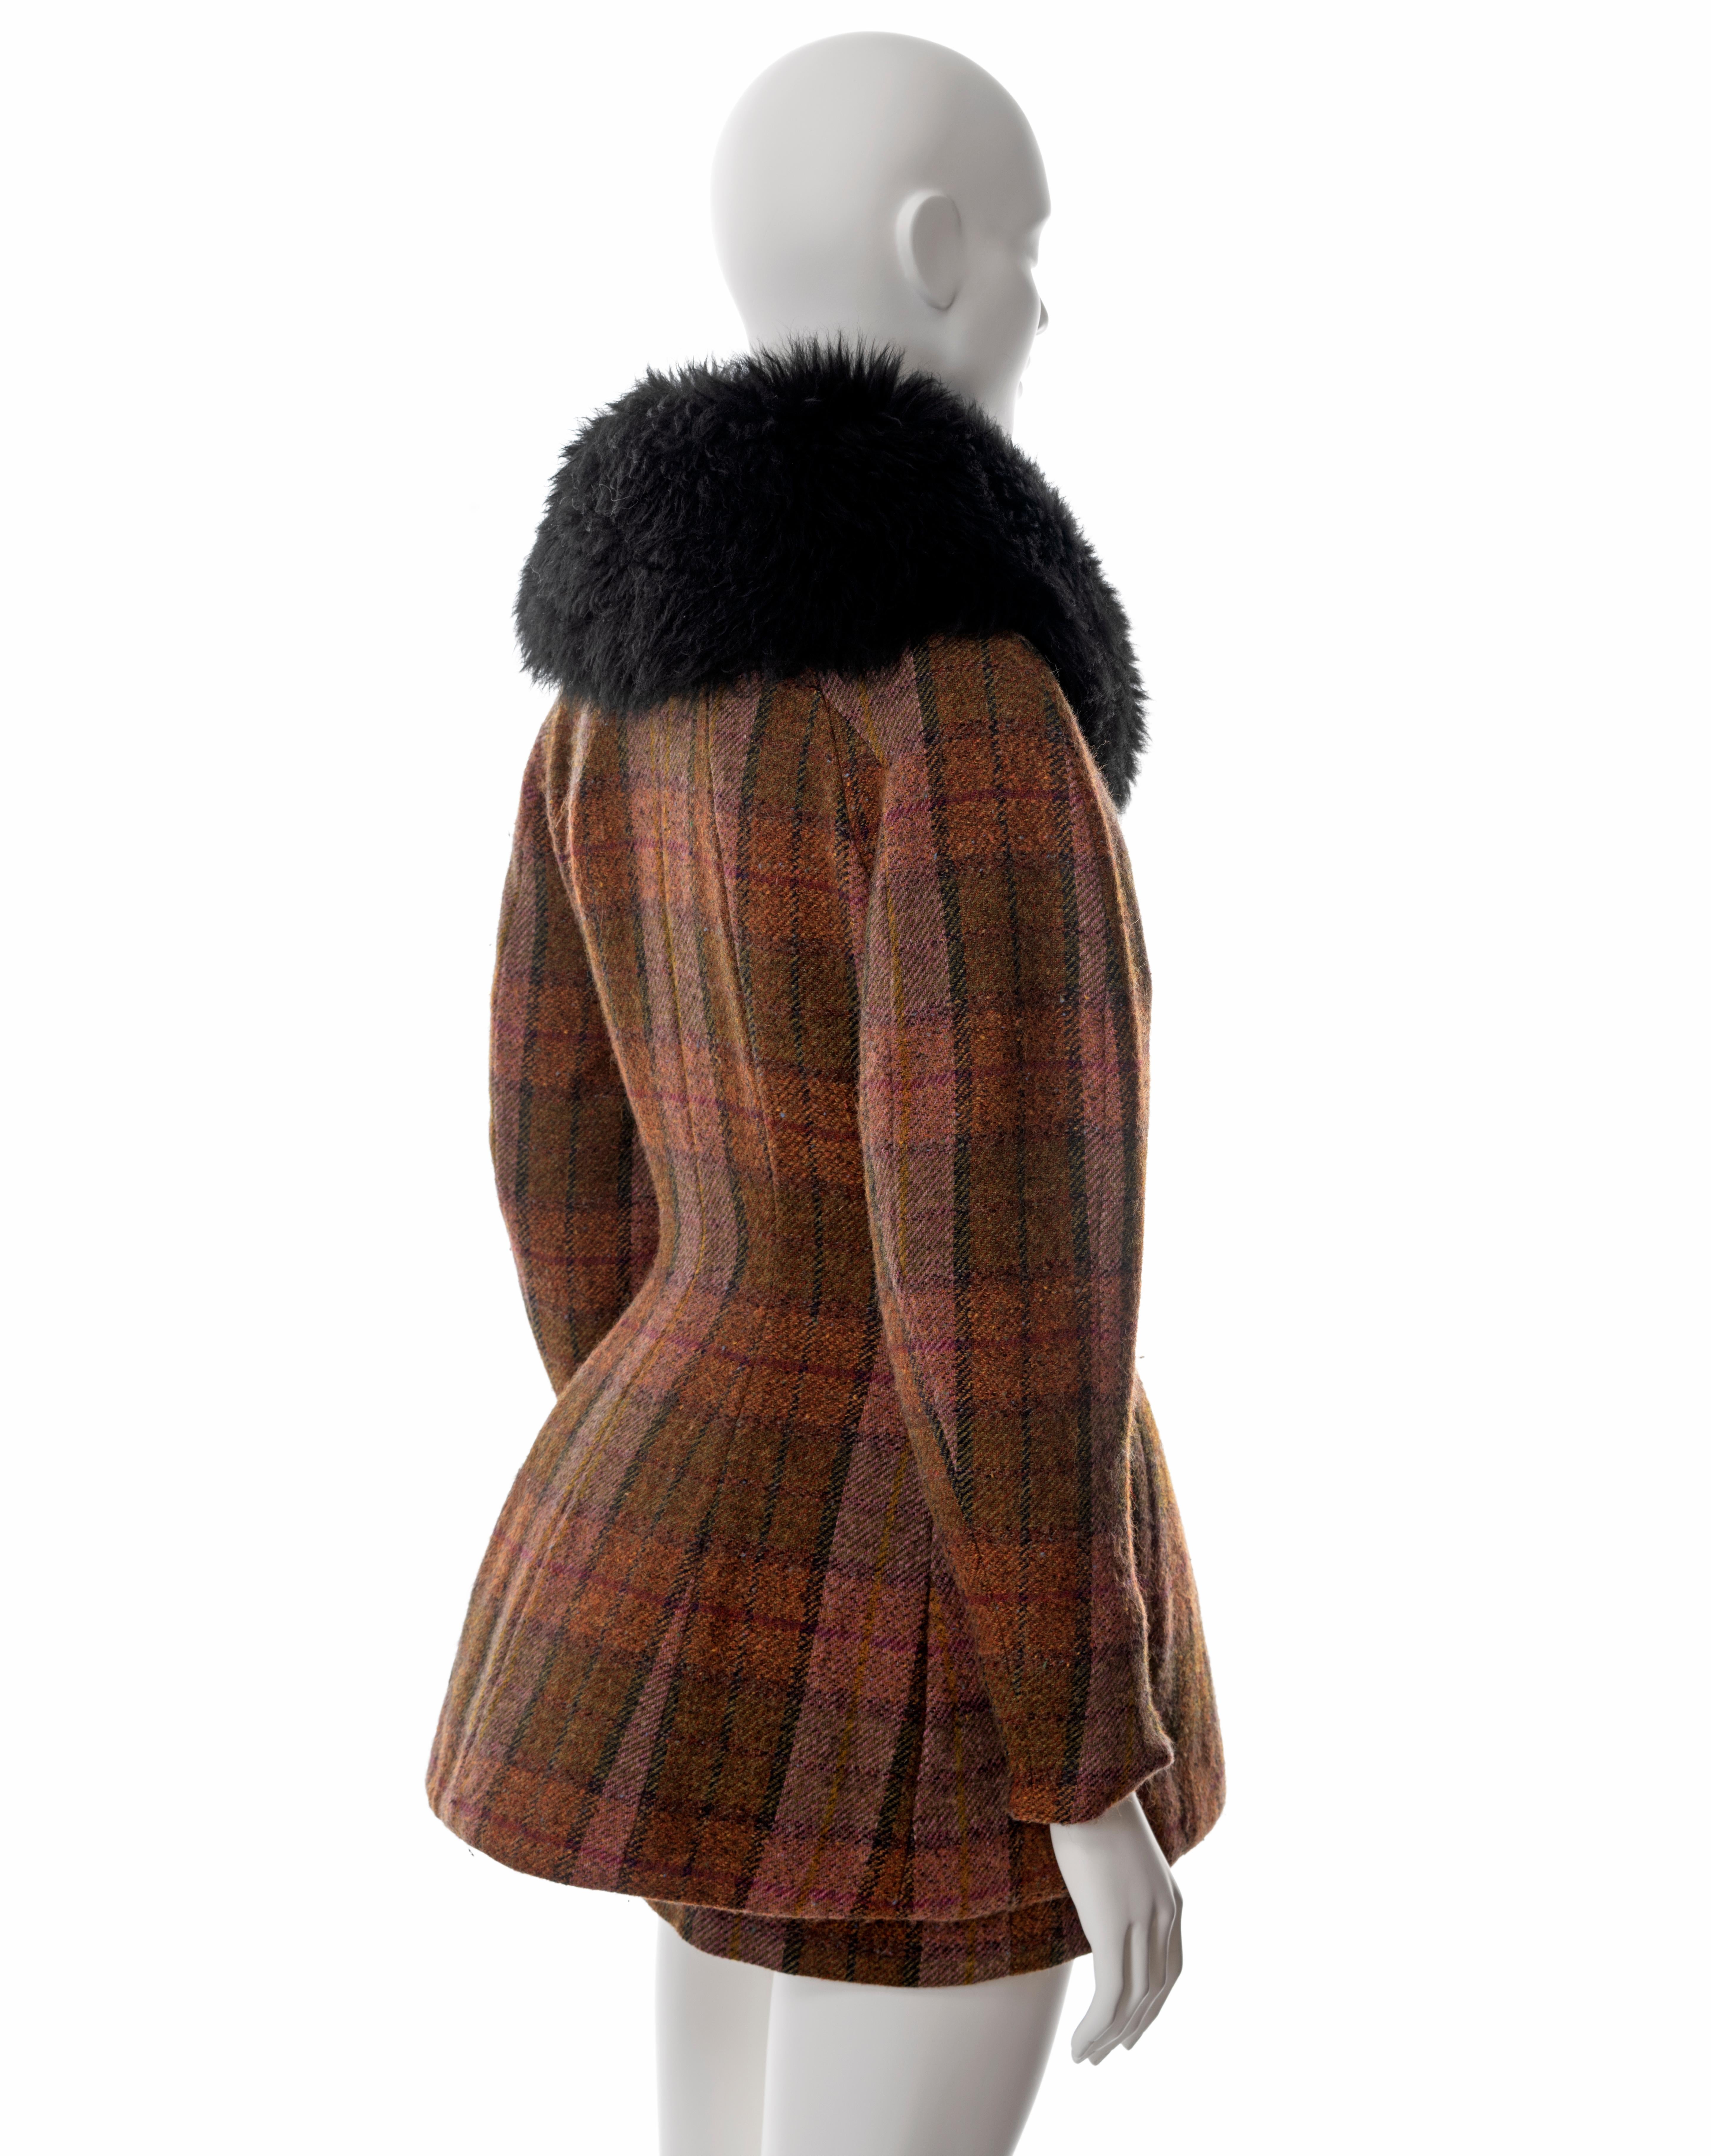 Vivienne Westwood brown tartan tweed skirt suit with sheepskin collar, fw 1995 2